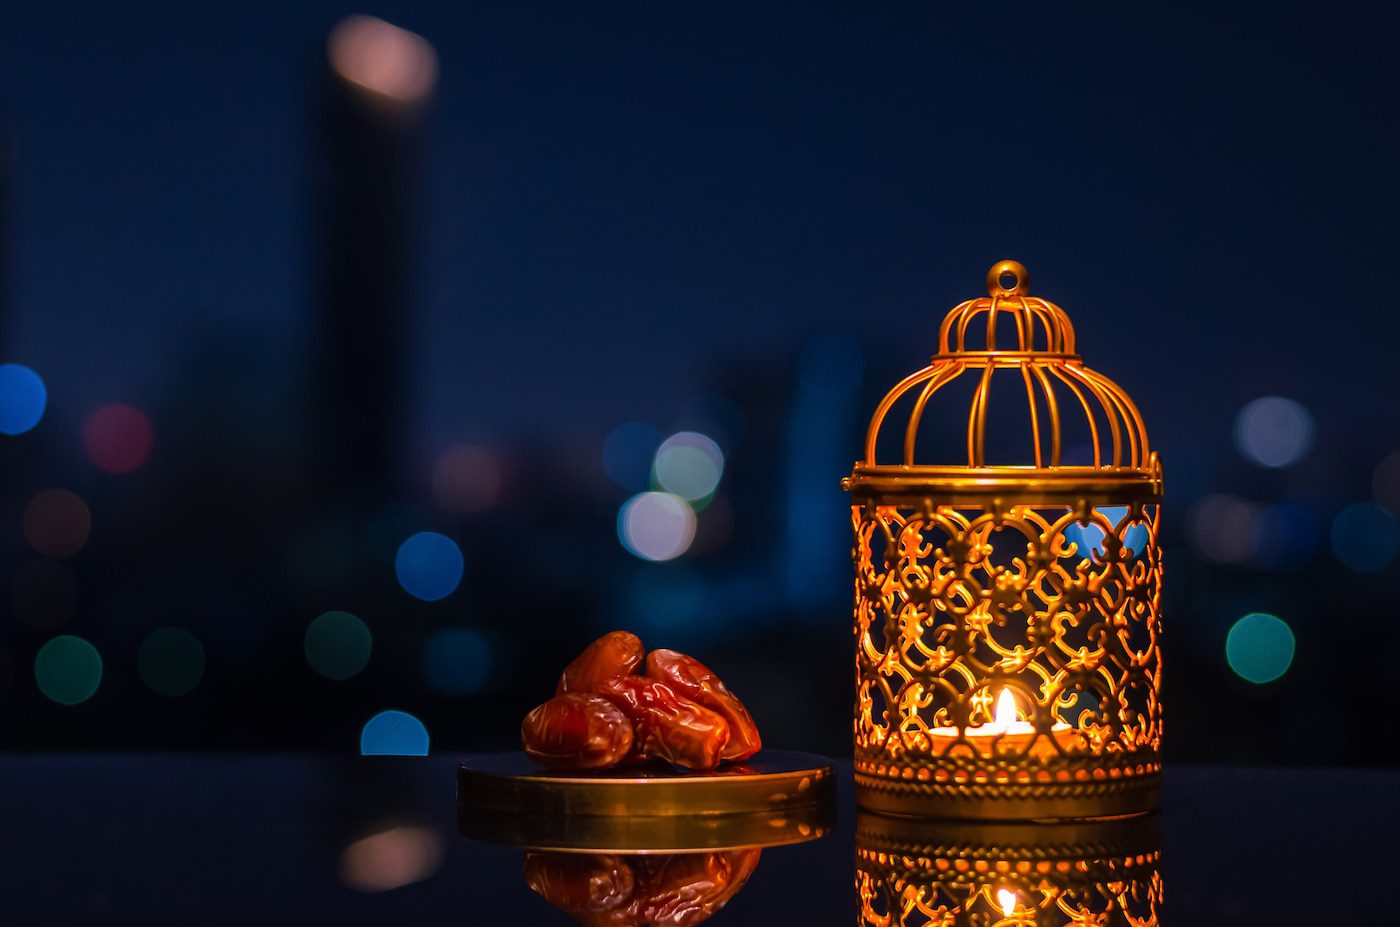 Ramadan-i consigli di etichetta per i non musulmani pubblicati dalla CNN-